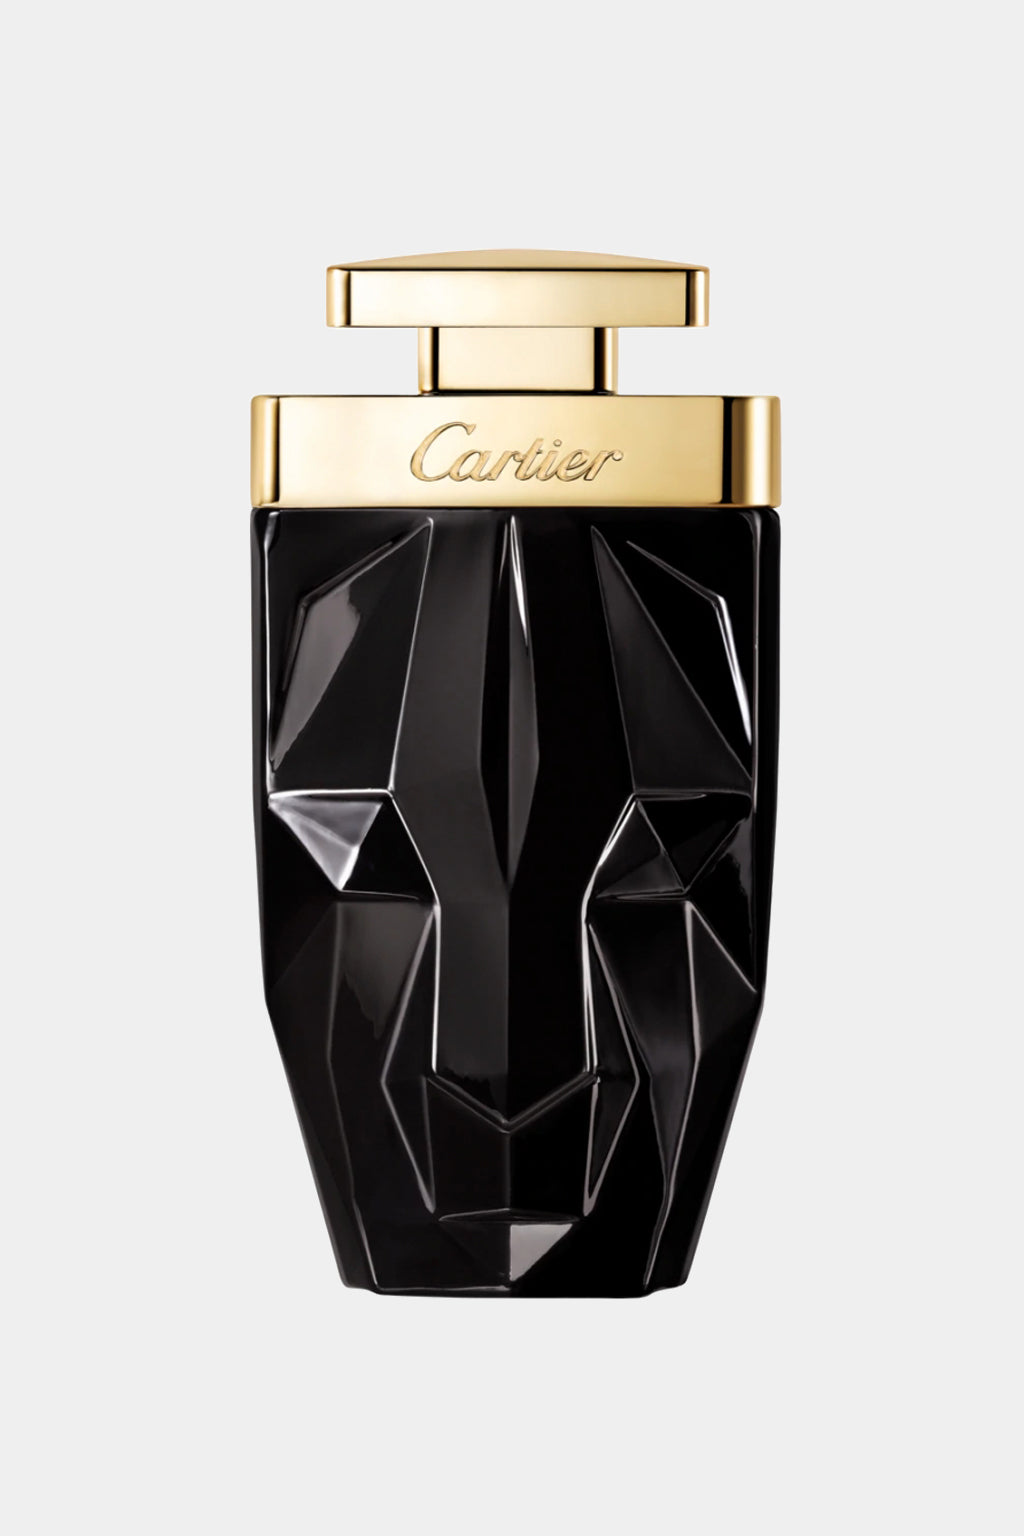 Cartier - La Panthera Limited Edition Eau de Parfum